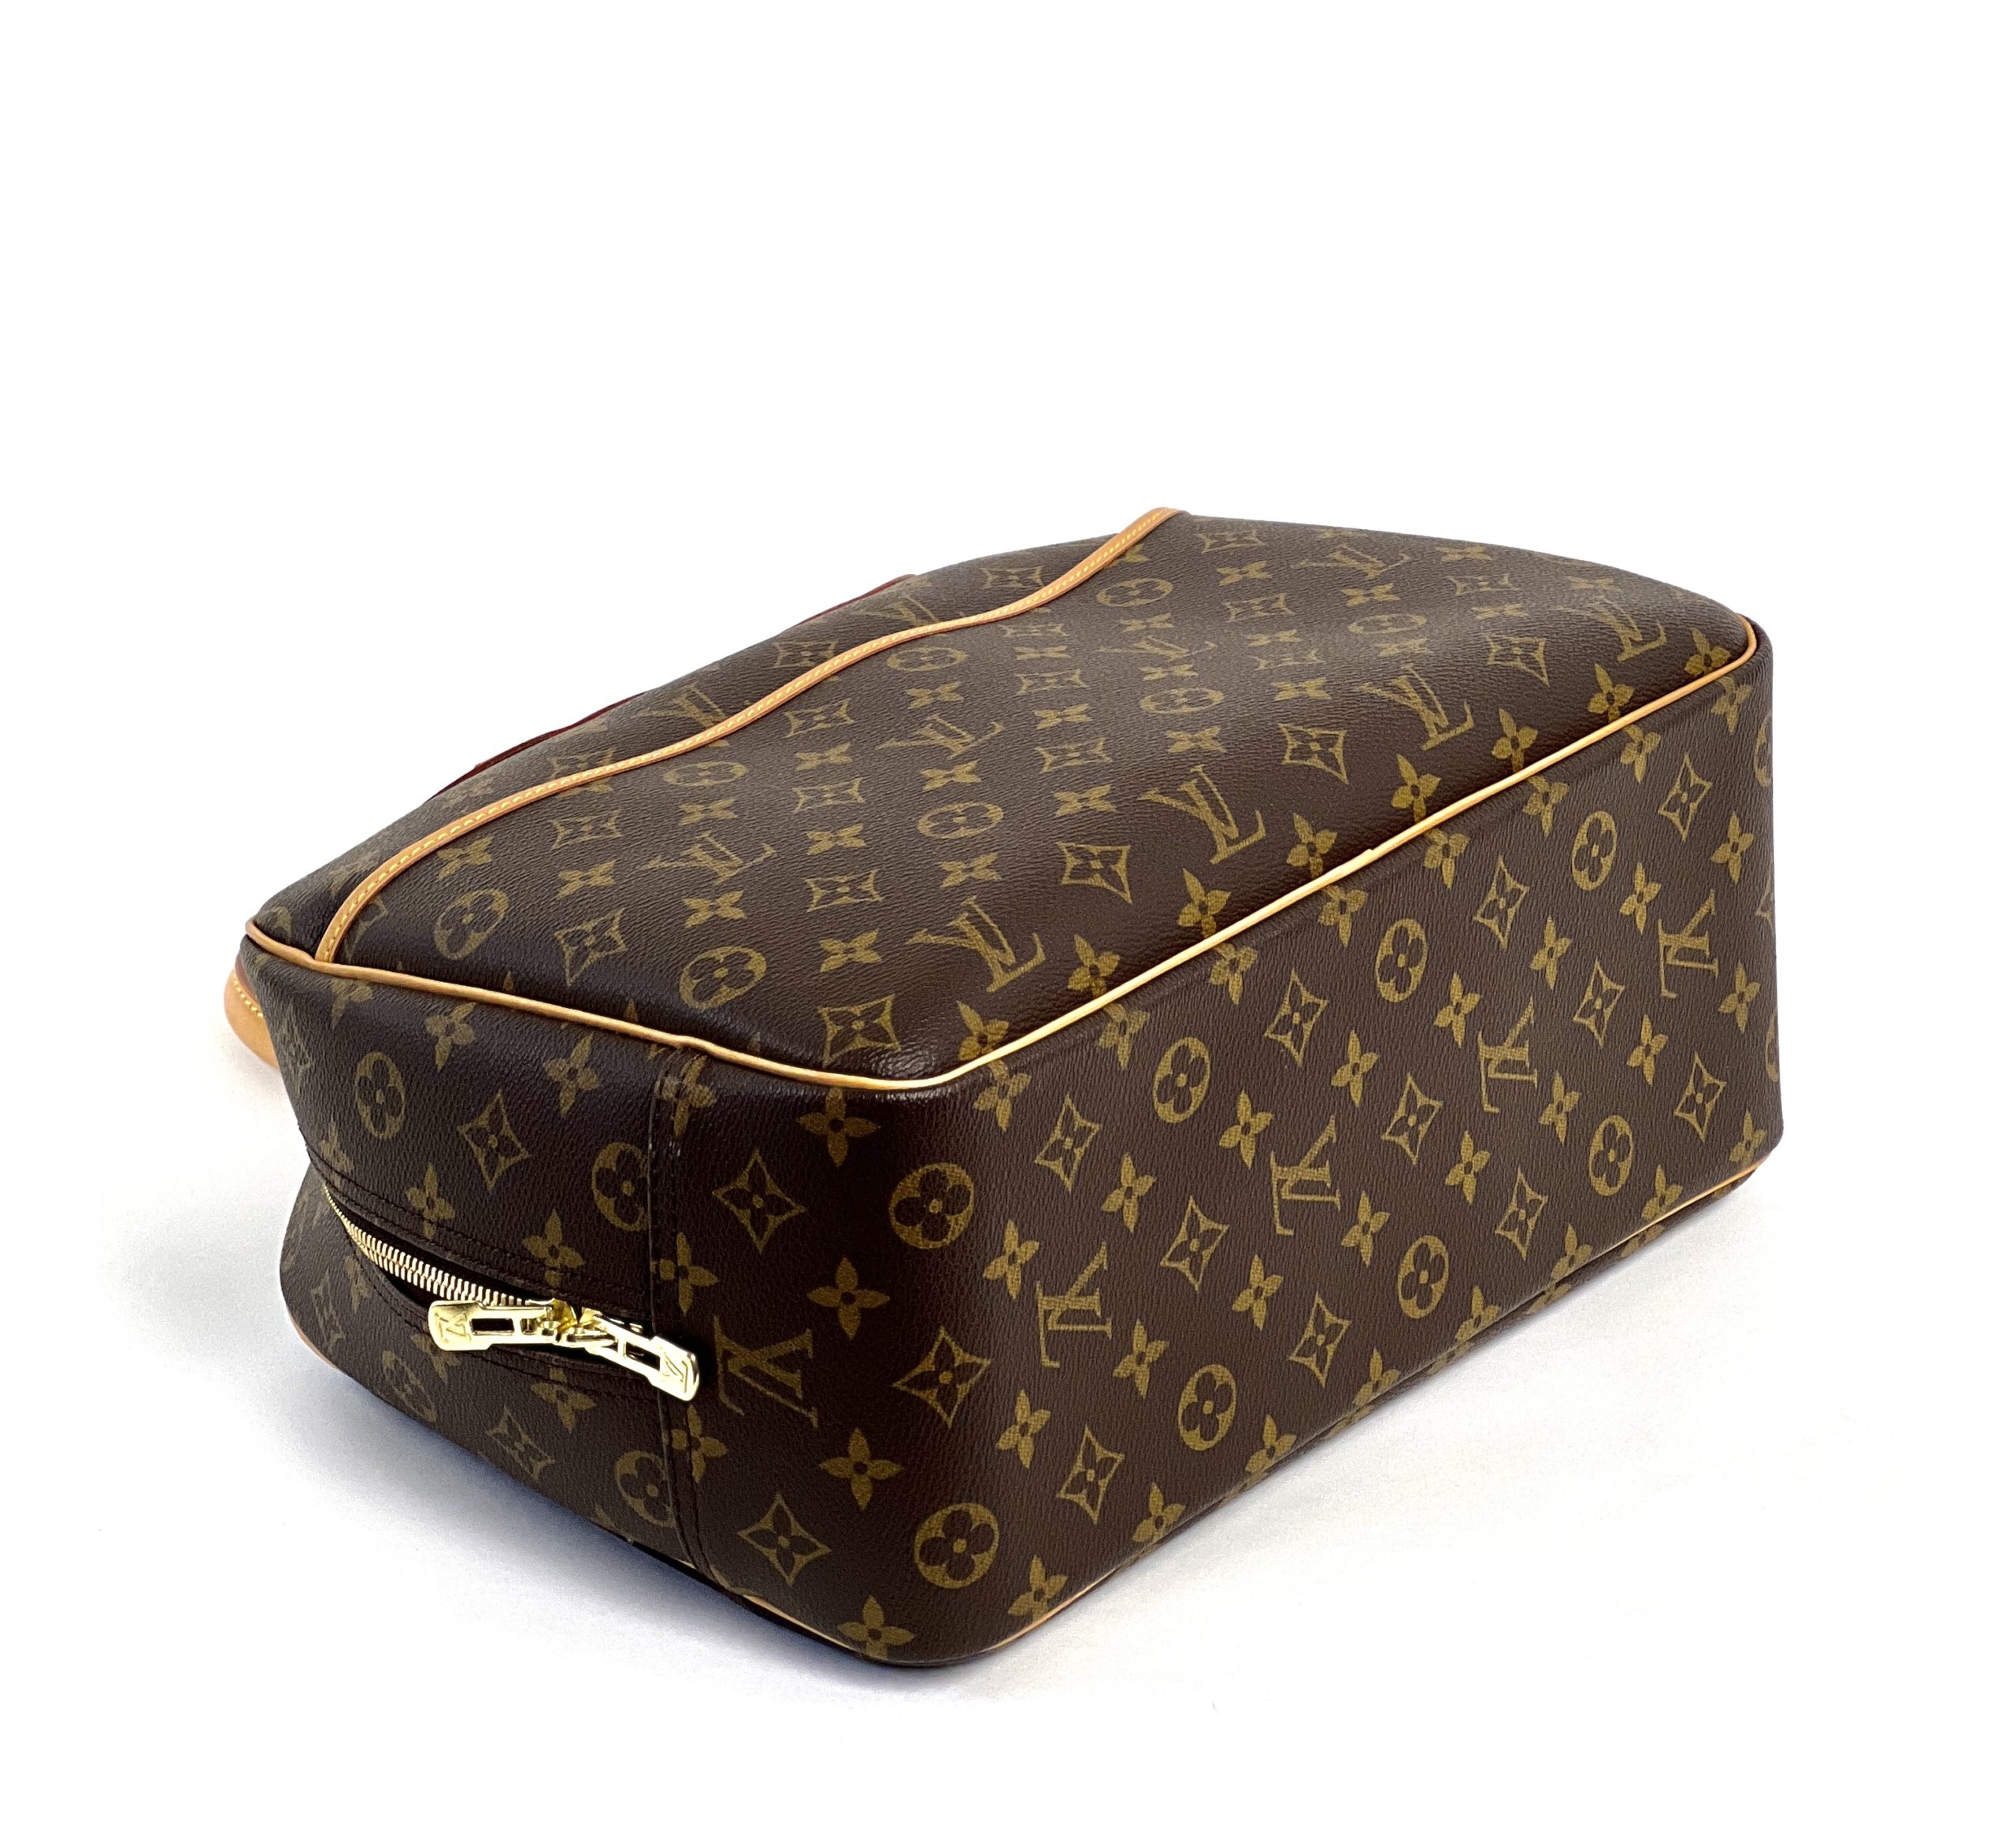 Authentic Louis Vuitton Monogram Deauville Vanity Bag Handbag Toiletry Case